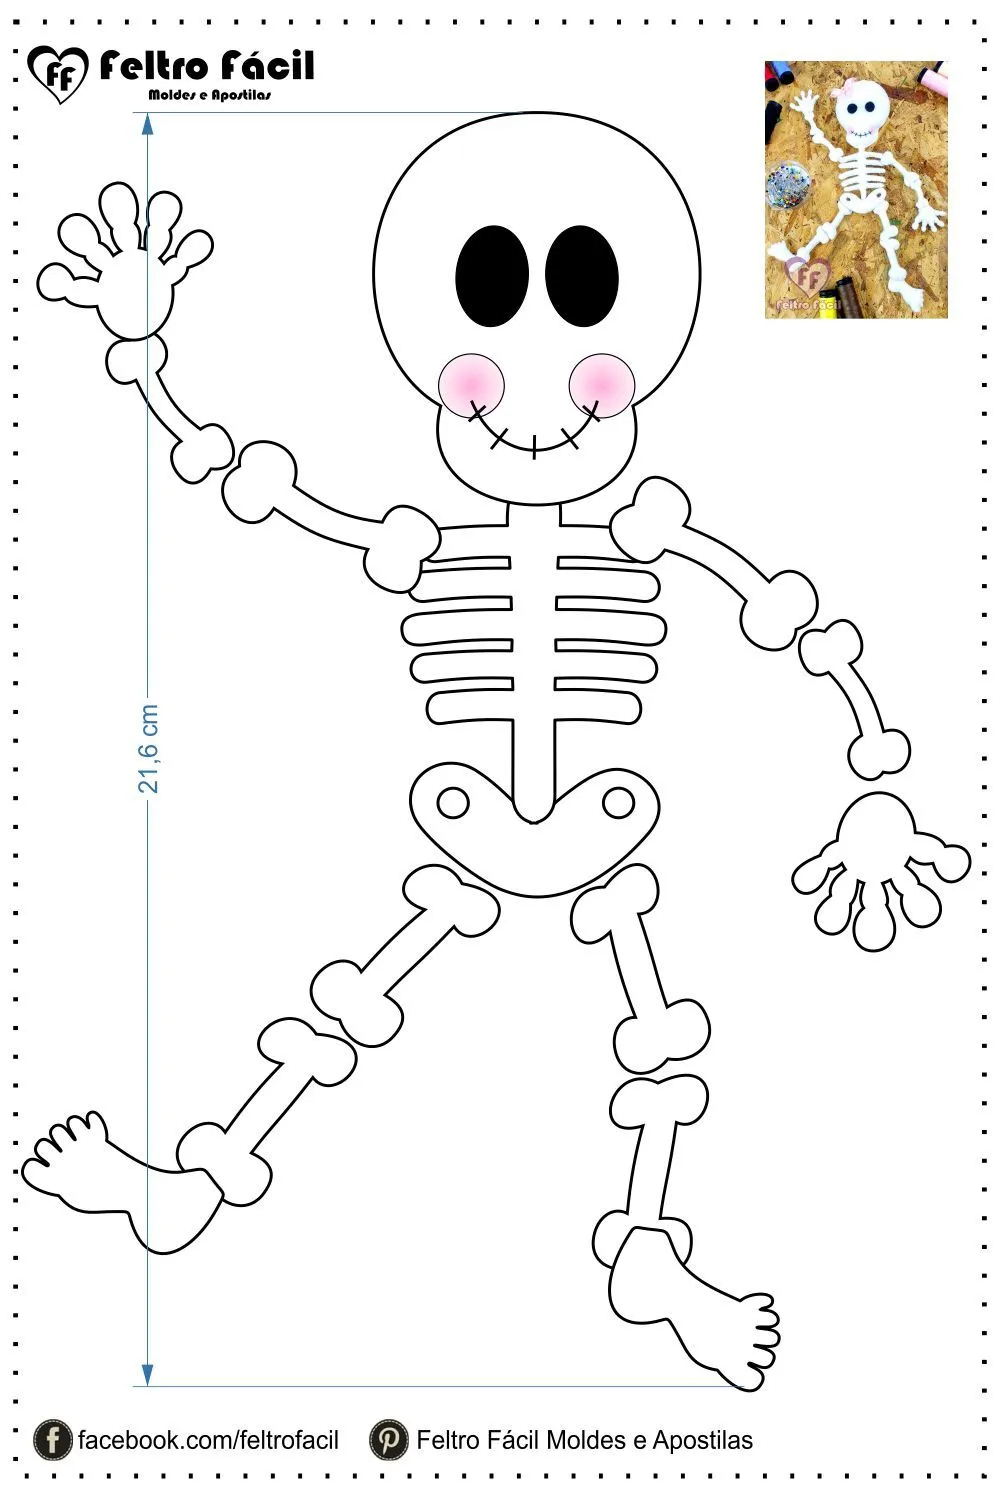 Molde de esqueleto criativo para salvar e imprimir [DIY] - Feltro Fácil |  Halloween feltro, Poções de halloween, Artesanatos de halloween